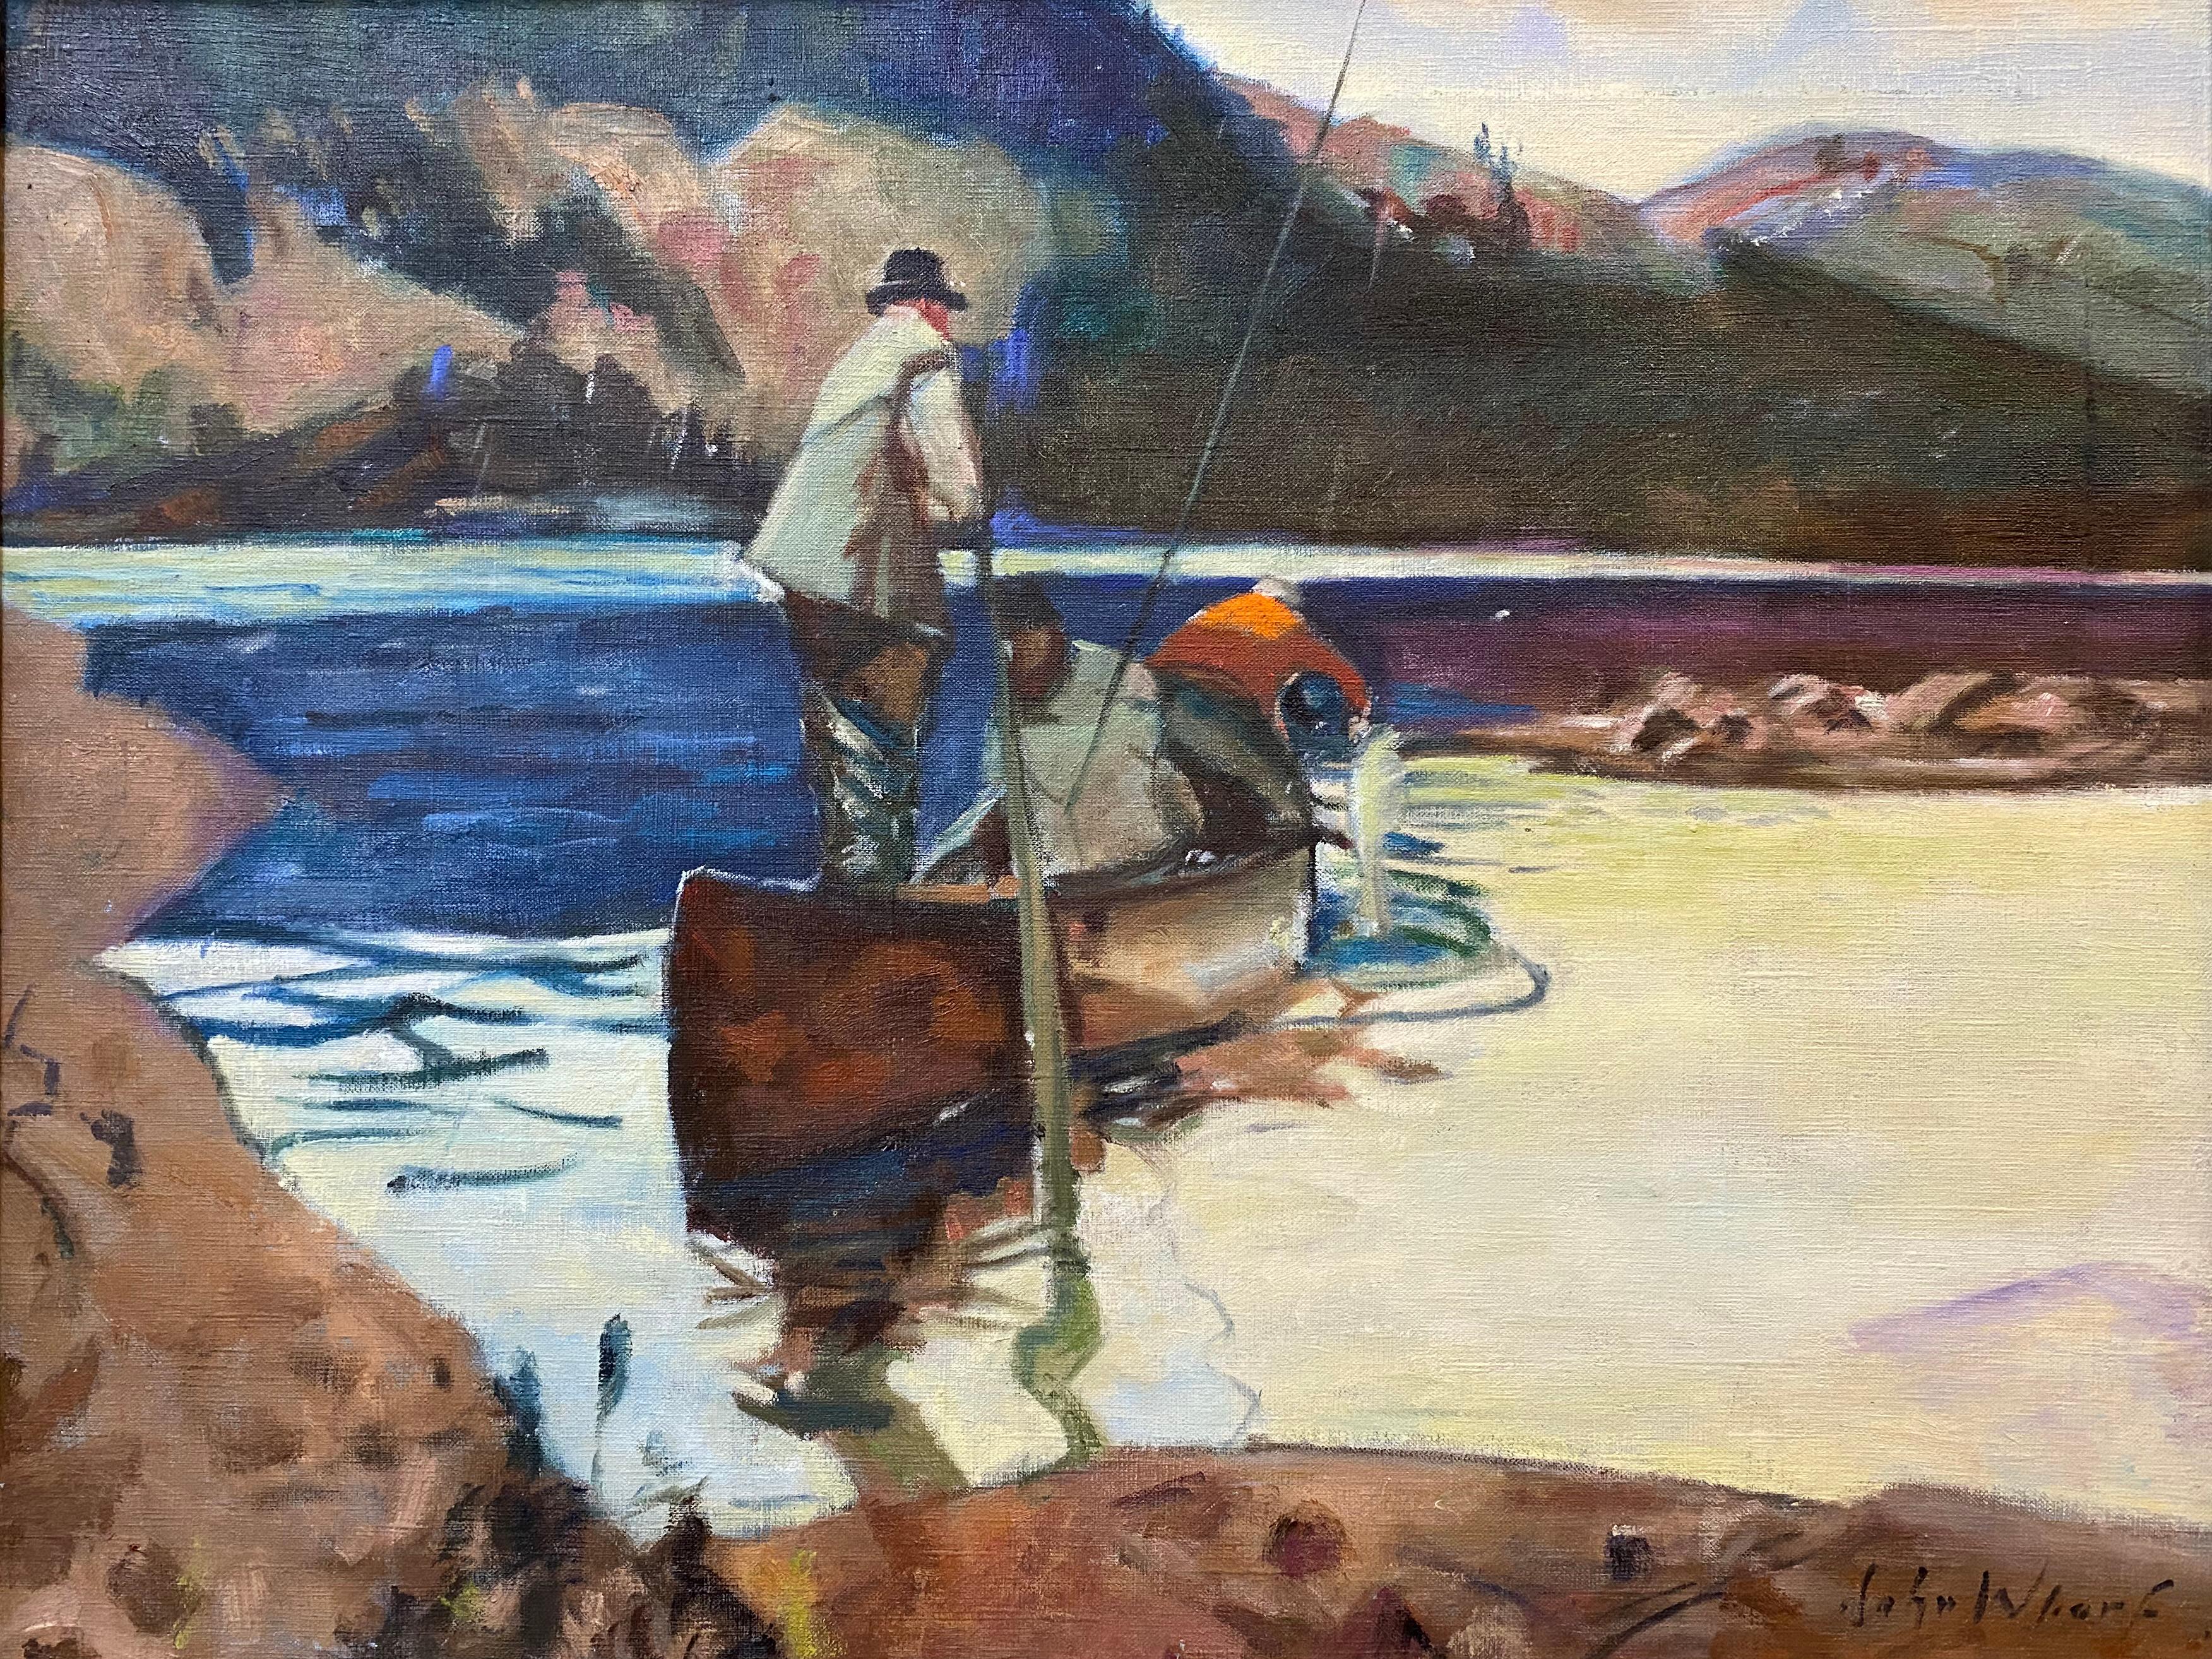 Lachsfischen – Painting von John Whorf